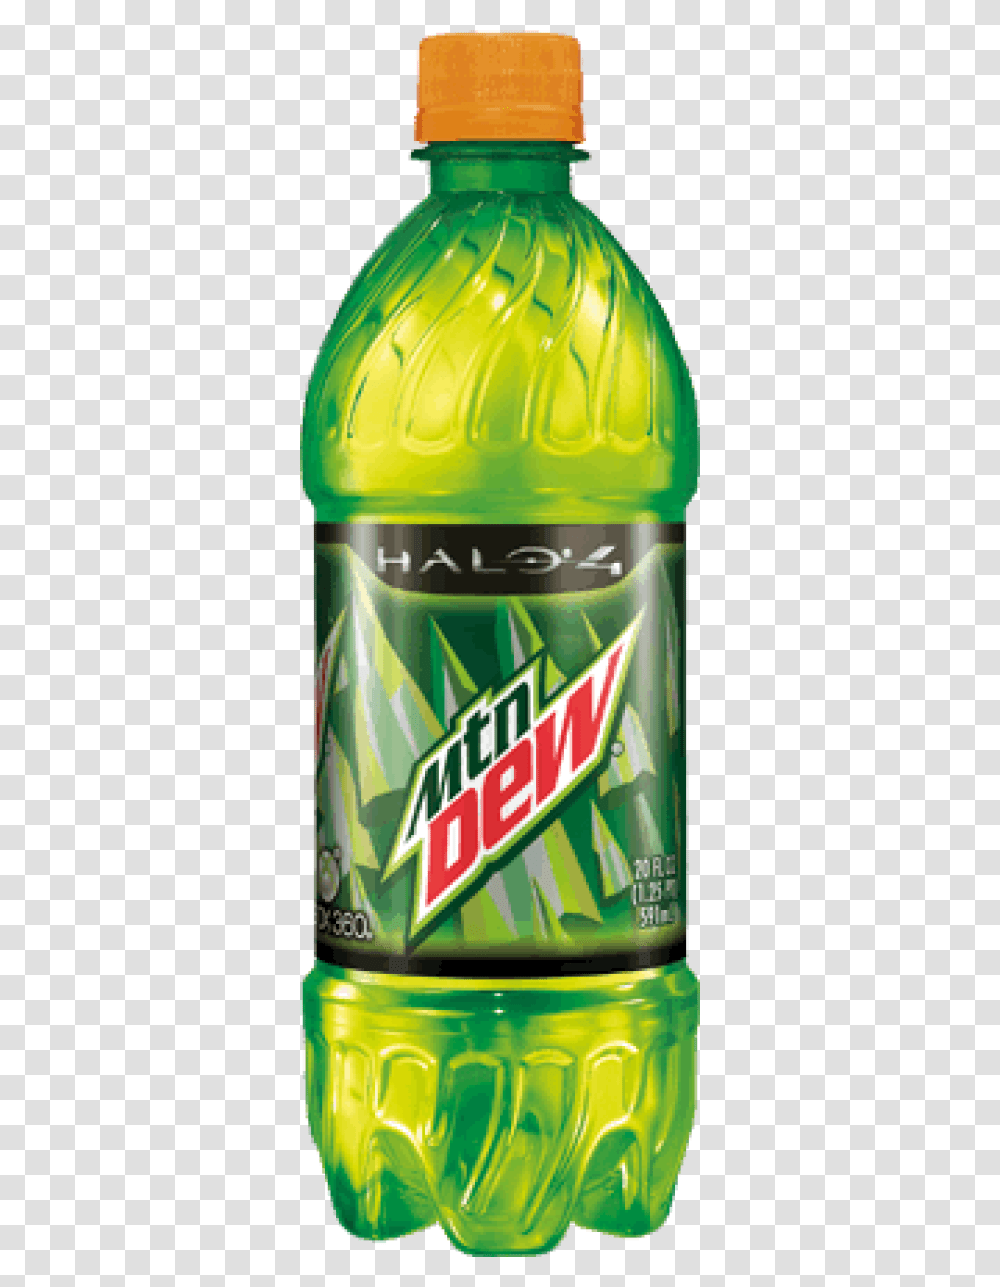 Halo 4 Dew Bottle Of Mountain Dew, Beverage, Drink, Soda, Lager Transparent Png